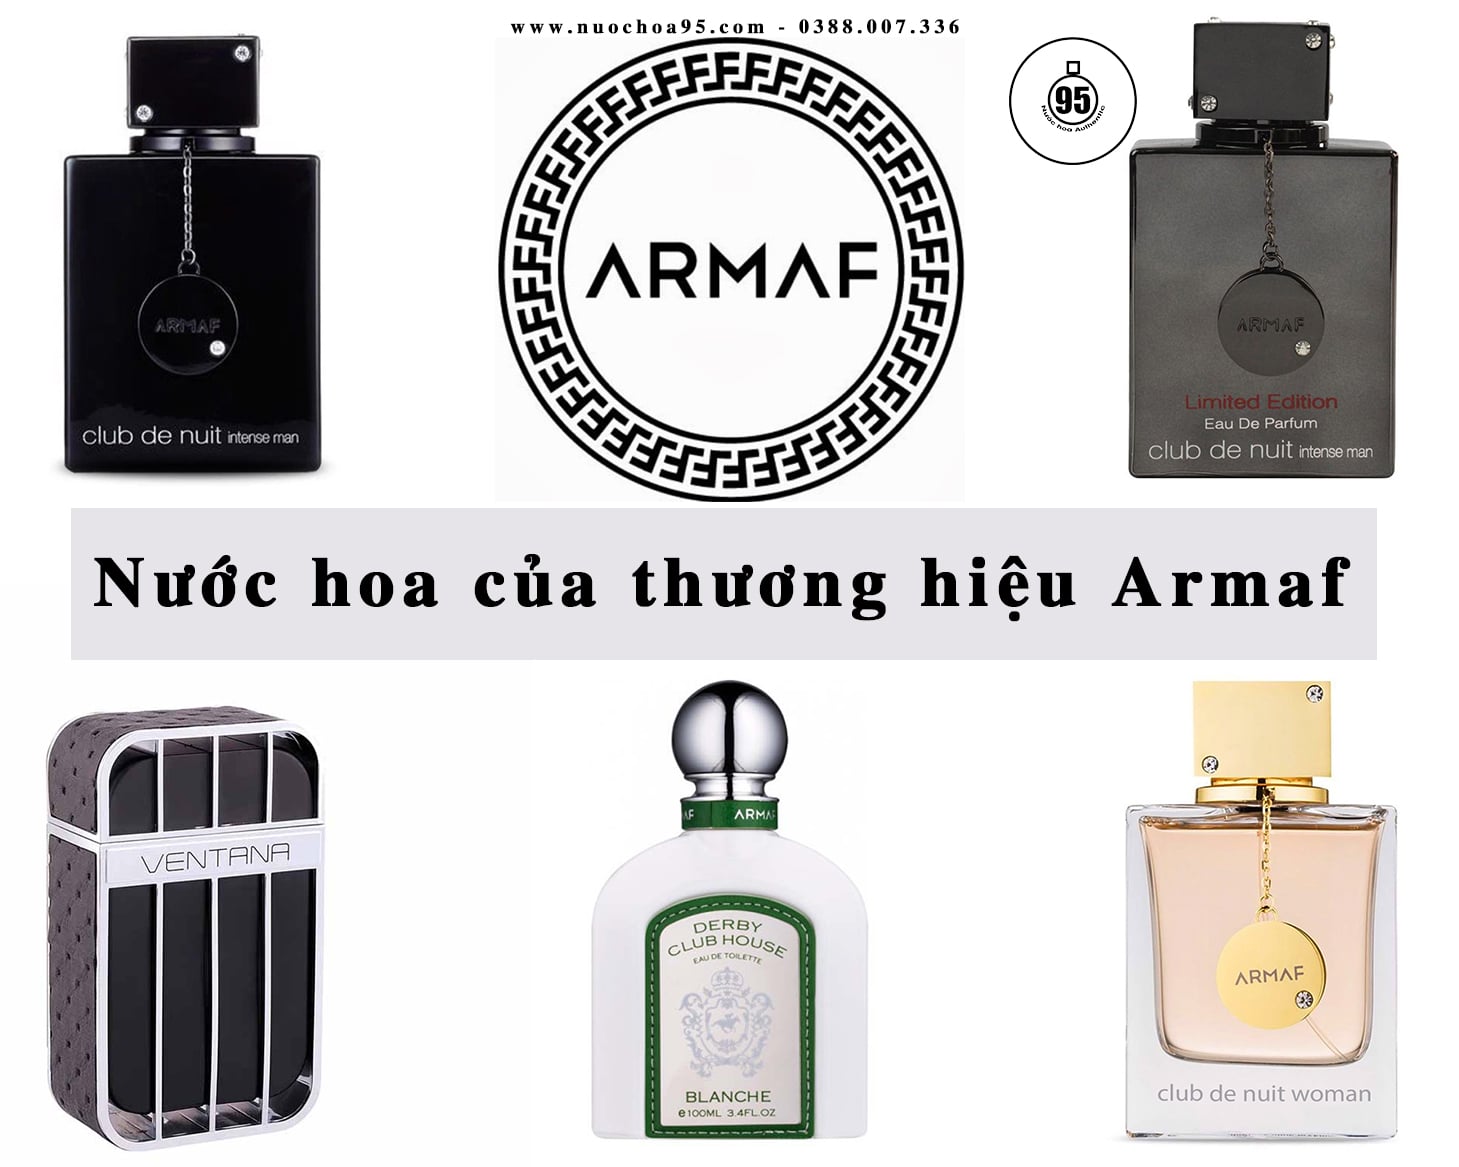 Nước hoa của thương hiệu Armaf